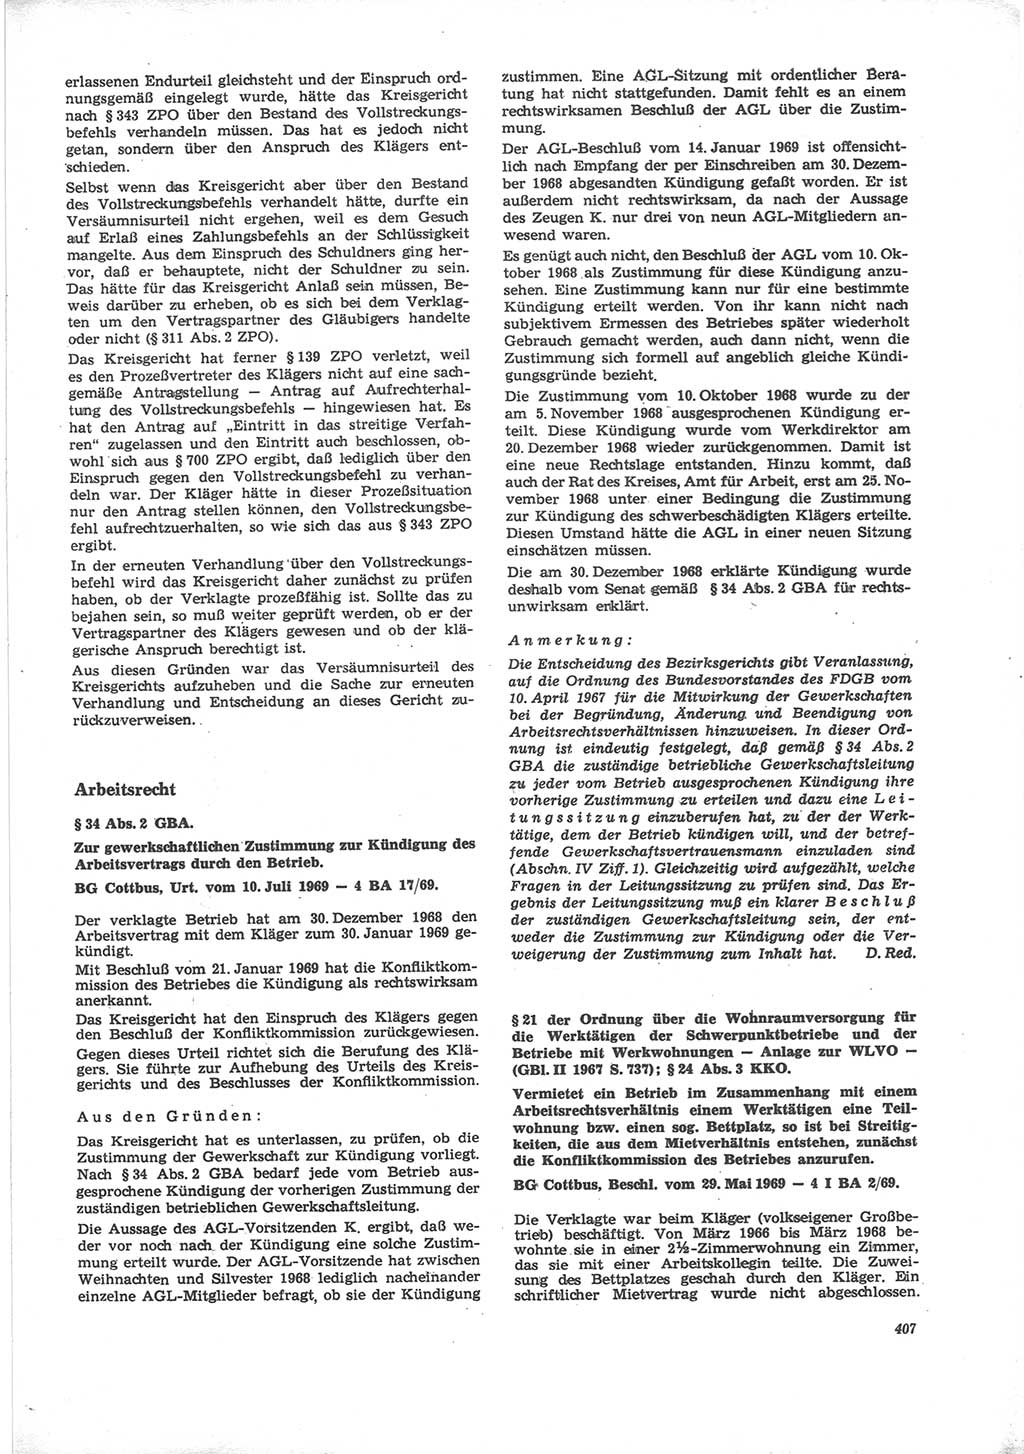 Neue Justiz (NJ), Zeitschrift für Recht und Rechtswissenschaft [Deutsche Demokratische Republik (DDR)], 24. Jahrgang 1970, Seite 407 (NJ DDR 1970, S. 407)